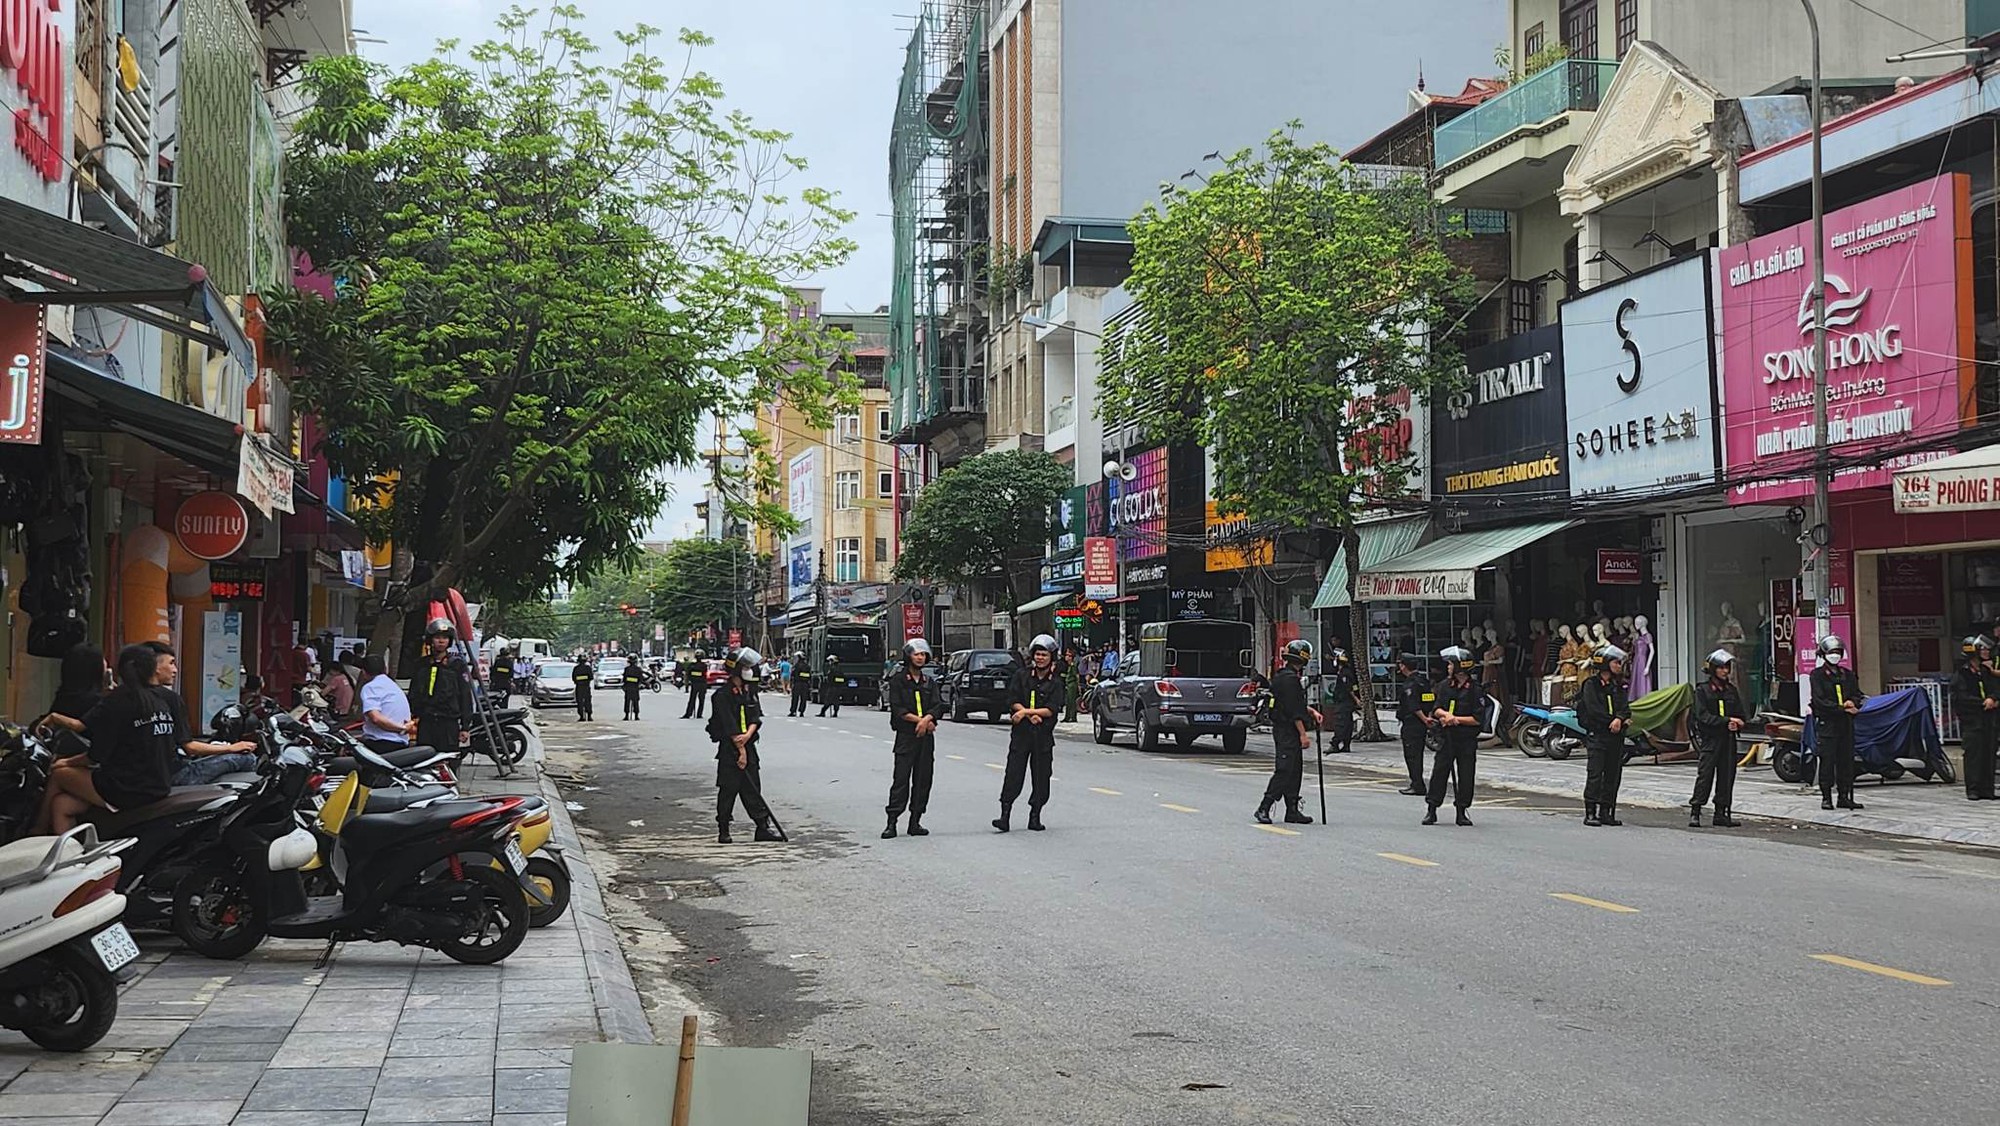 CLIP: Hàng chục cảnh sát xuất hiện trước nhà trùm giang hồ Tuấn thần đèn ở Thanh Hóa - Ảnh 3.